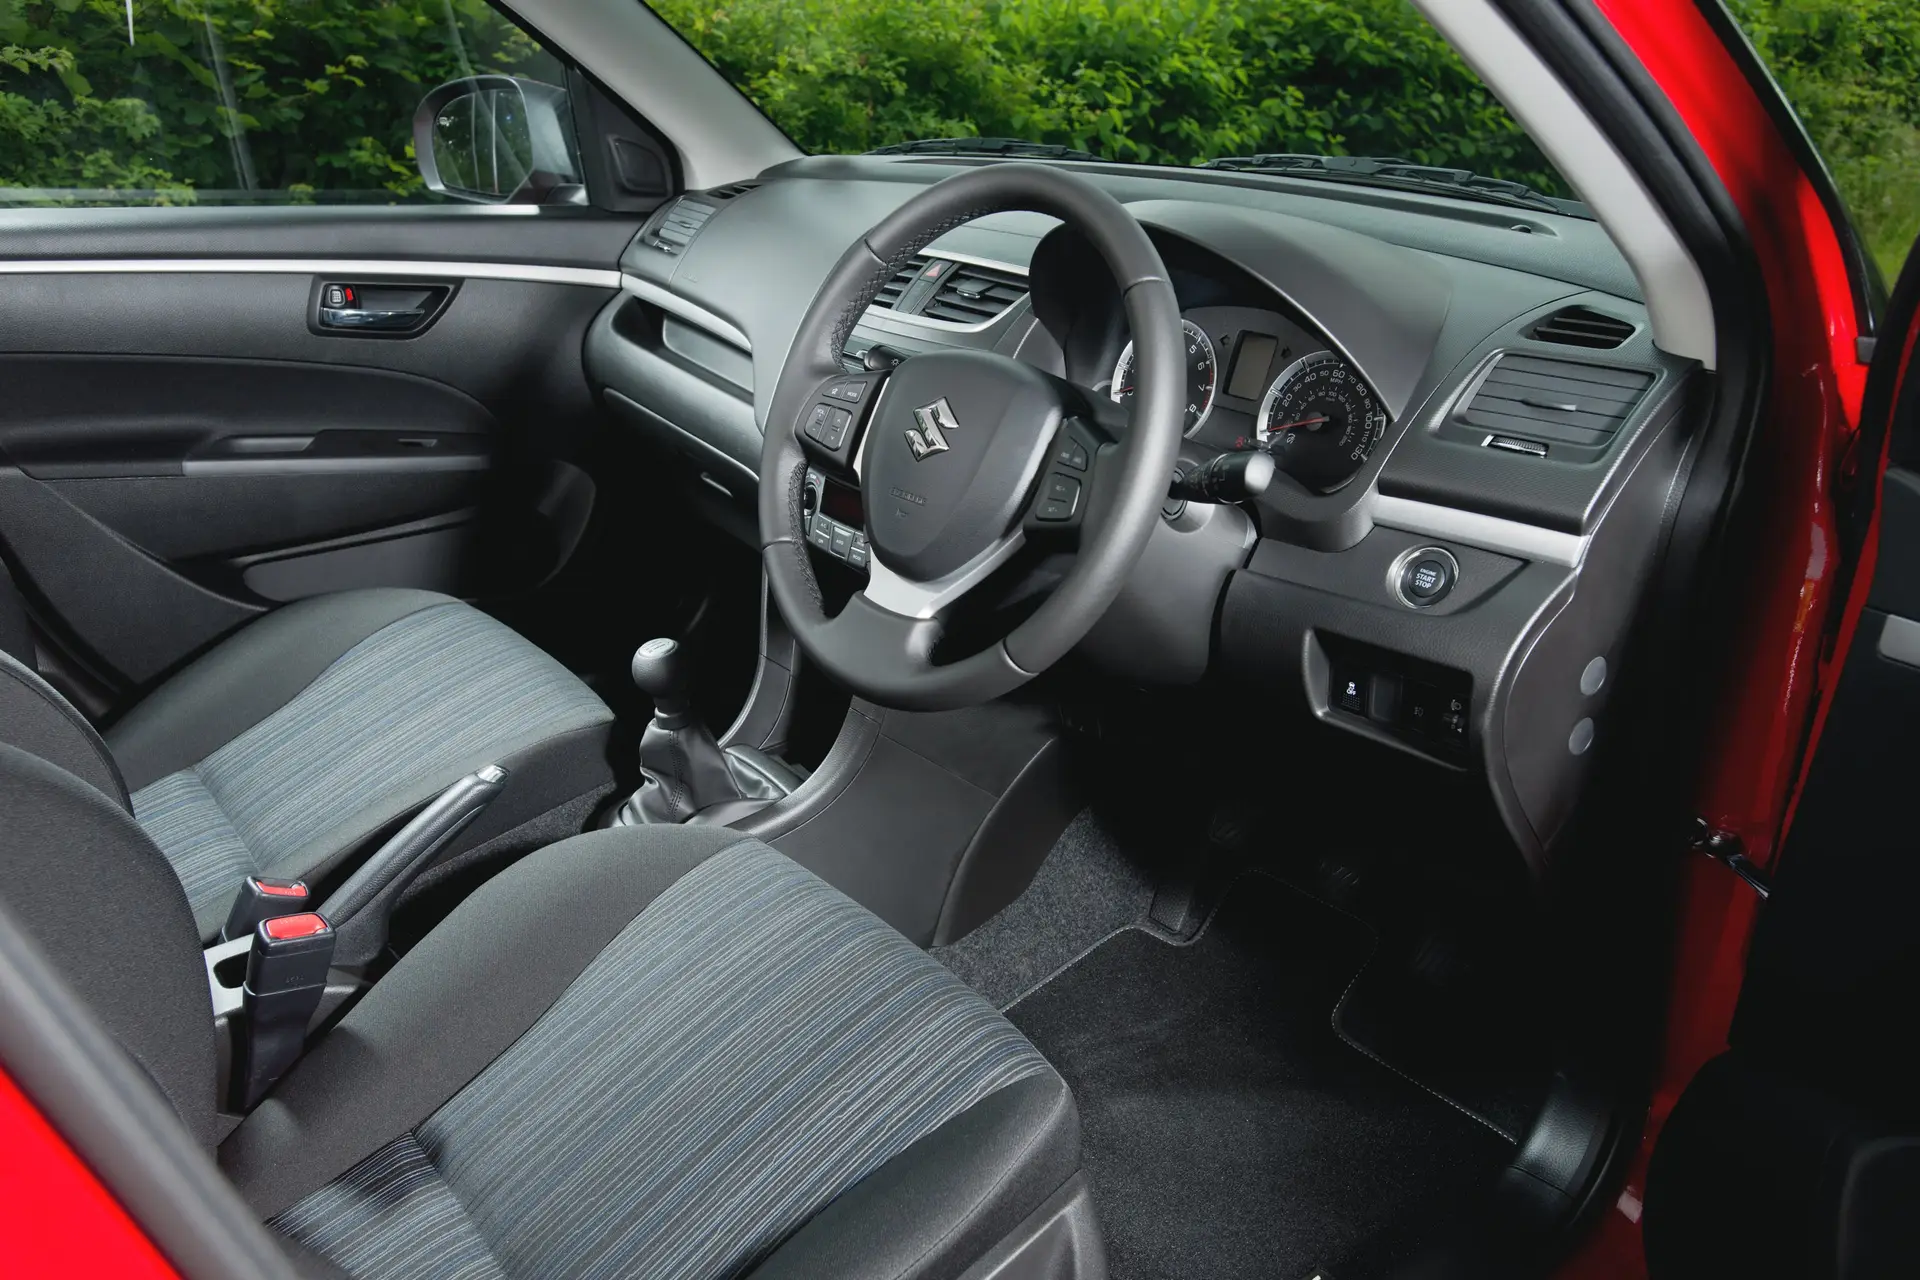 Suzuki Swift Front Interior